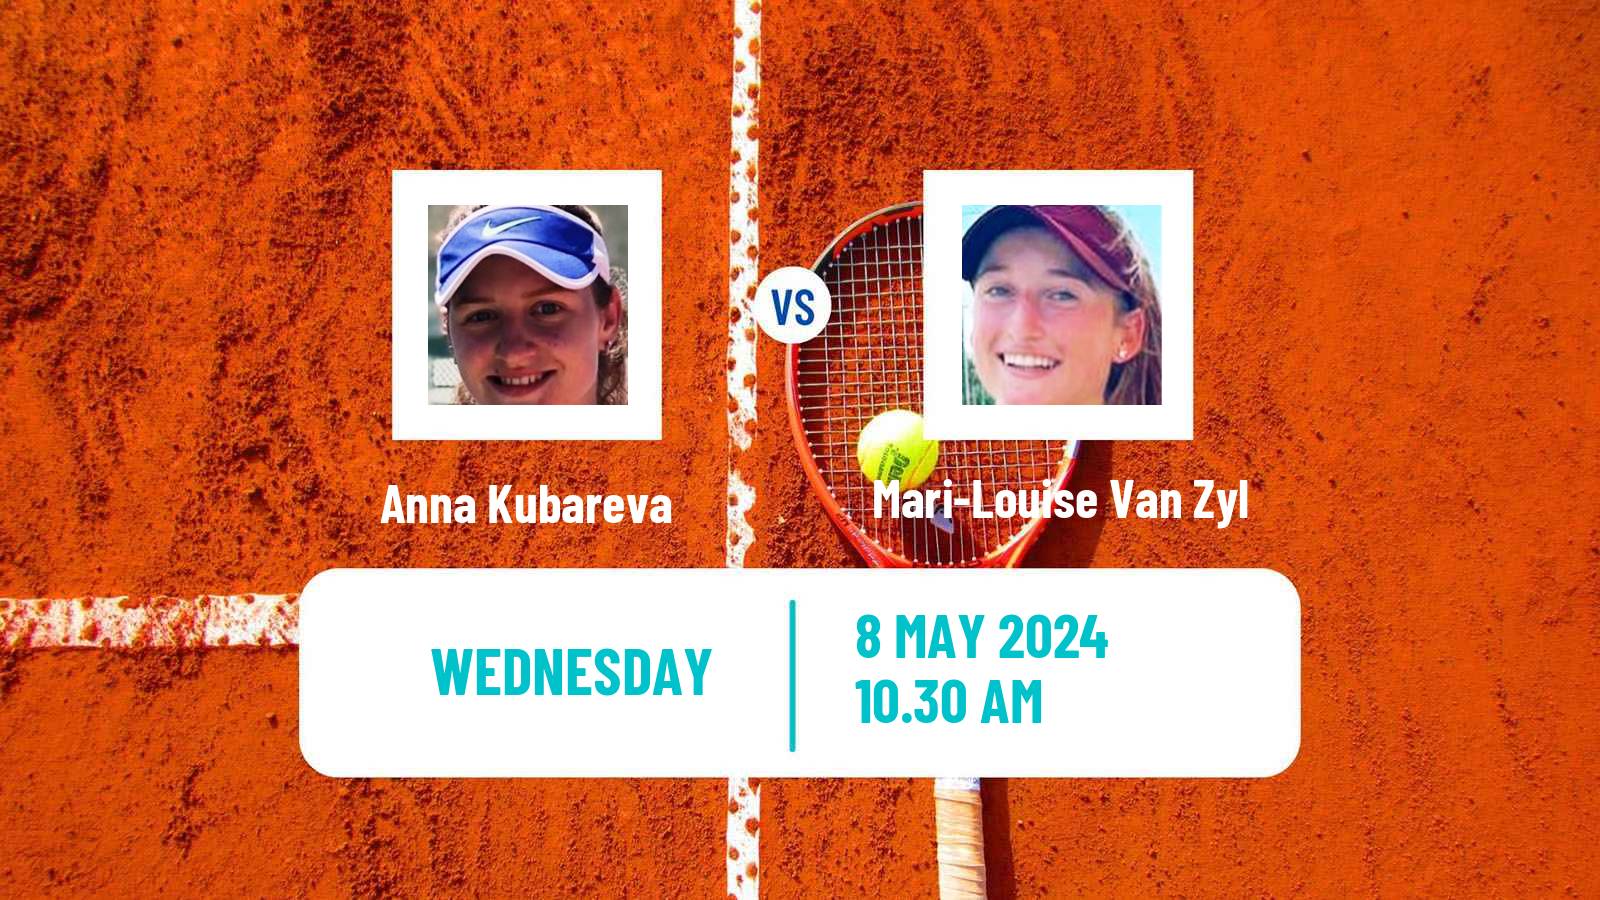 Tennis ITF W15 Monastir 17 Women Anna Kubareva - Mari-Louise Van Zyl